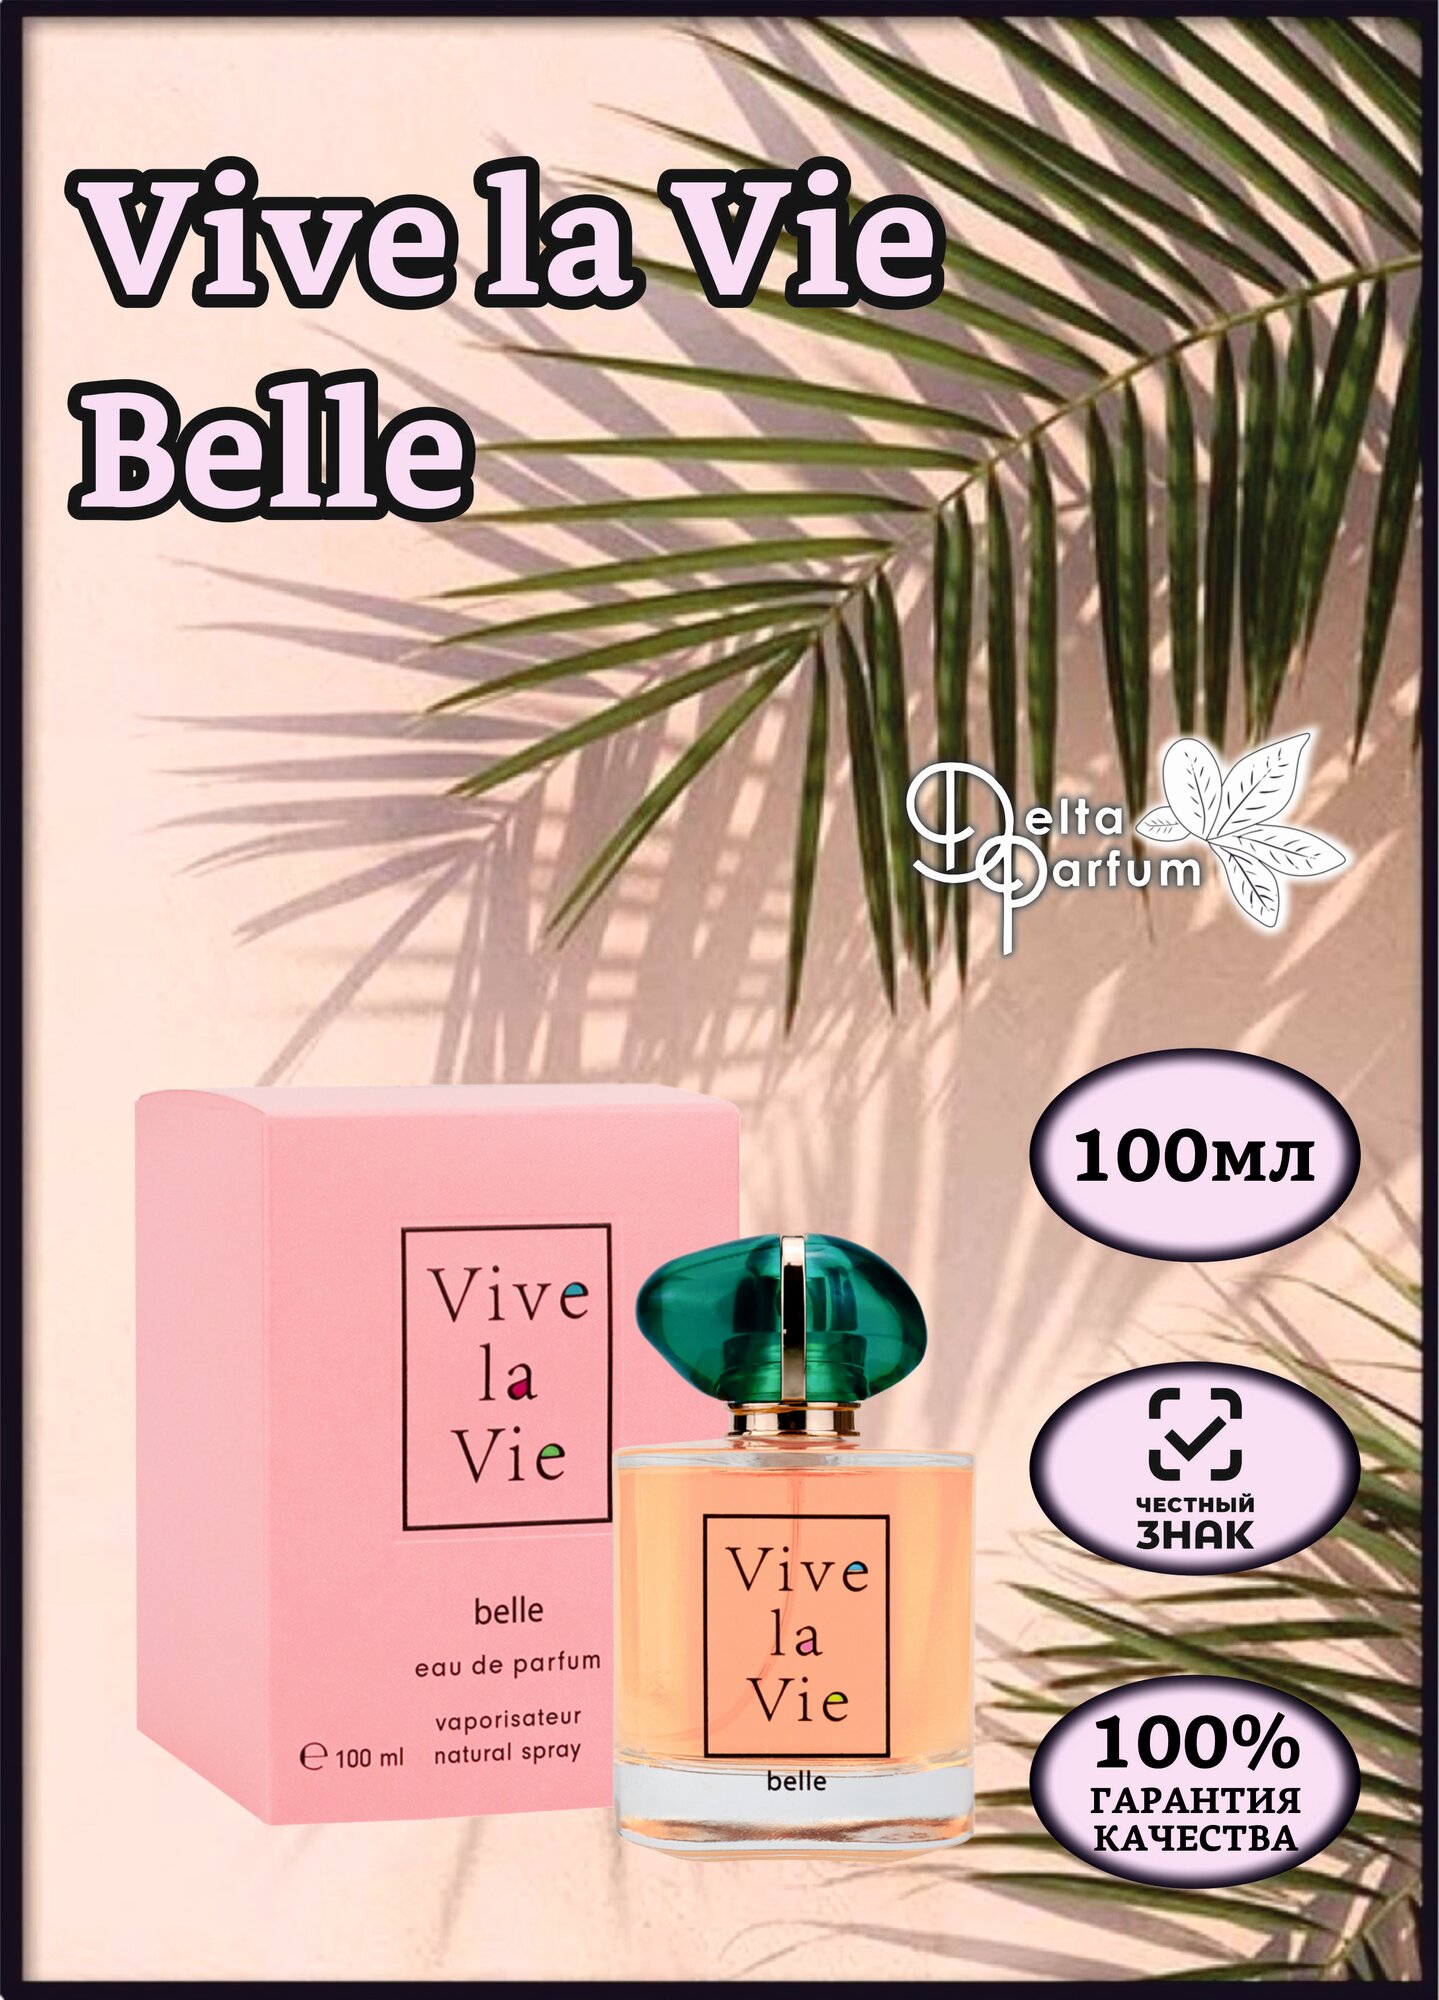 Delta parfum (Vinci) Туалетная вода женская Vive La Vie Belle, 100мл